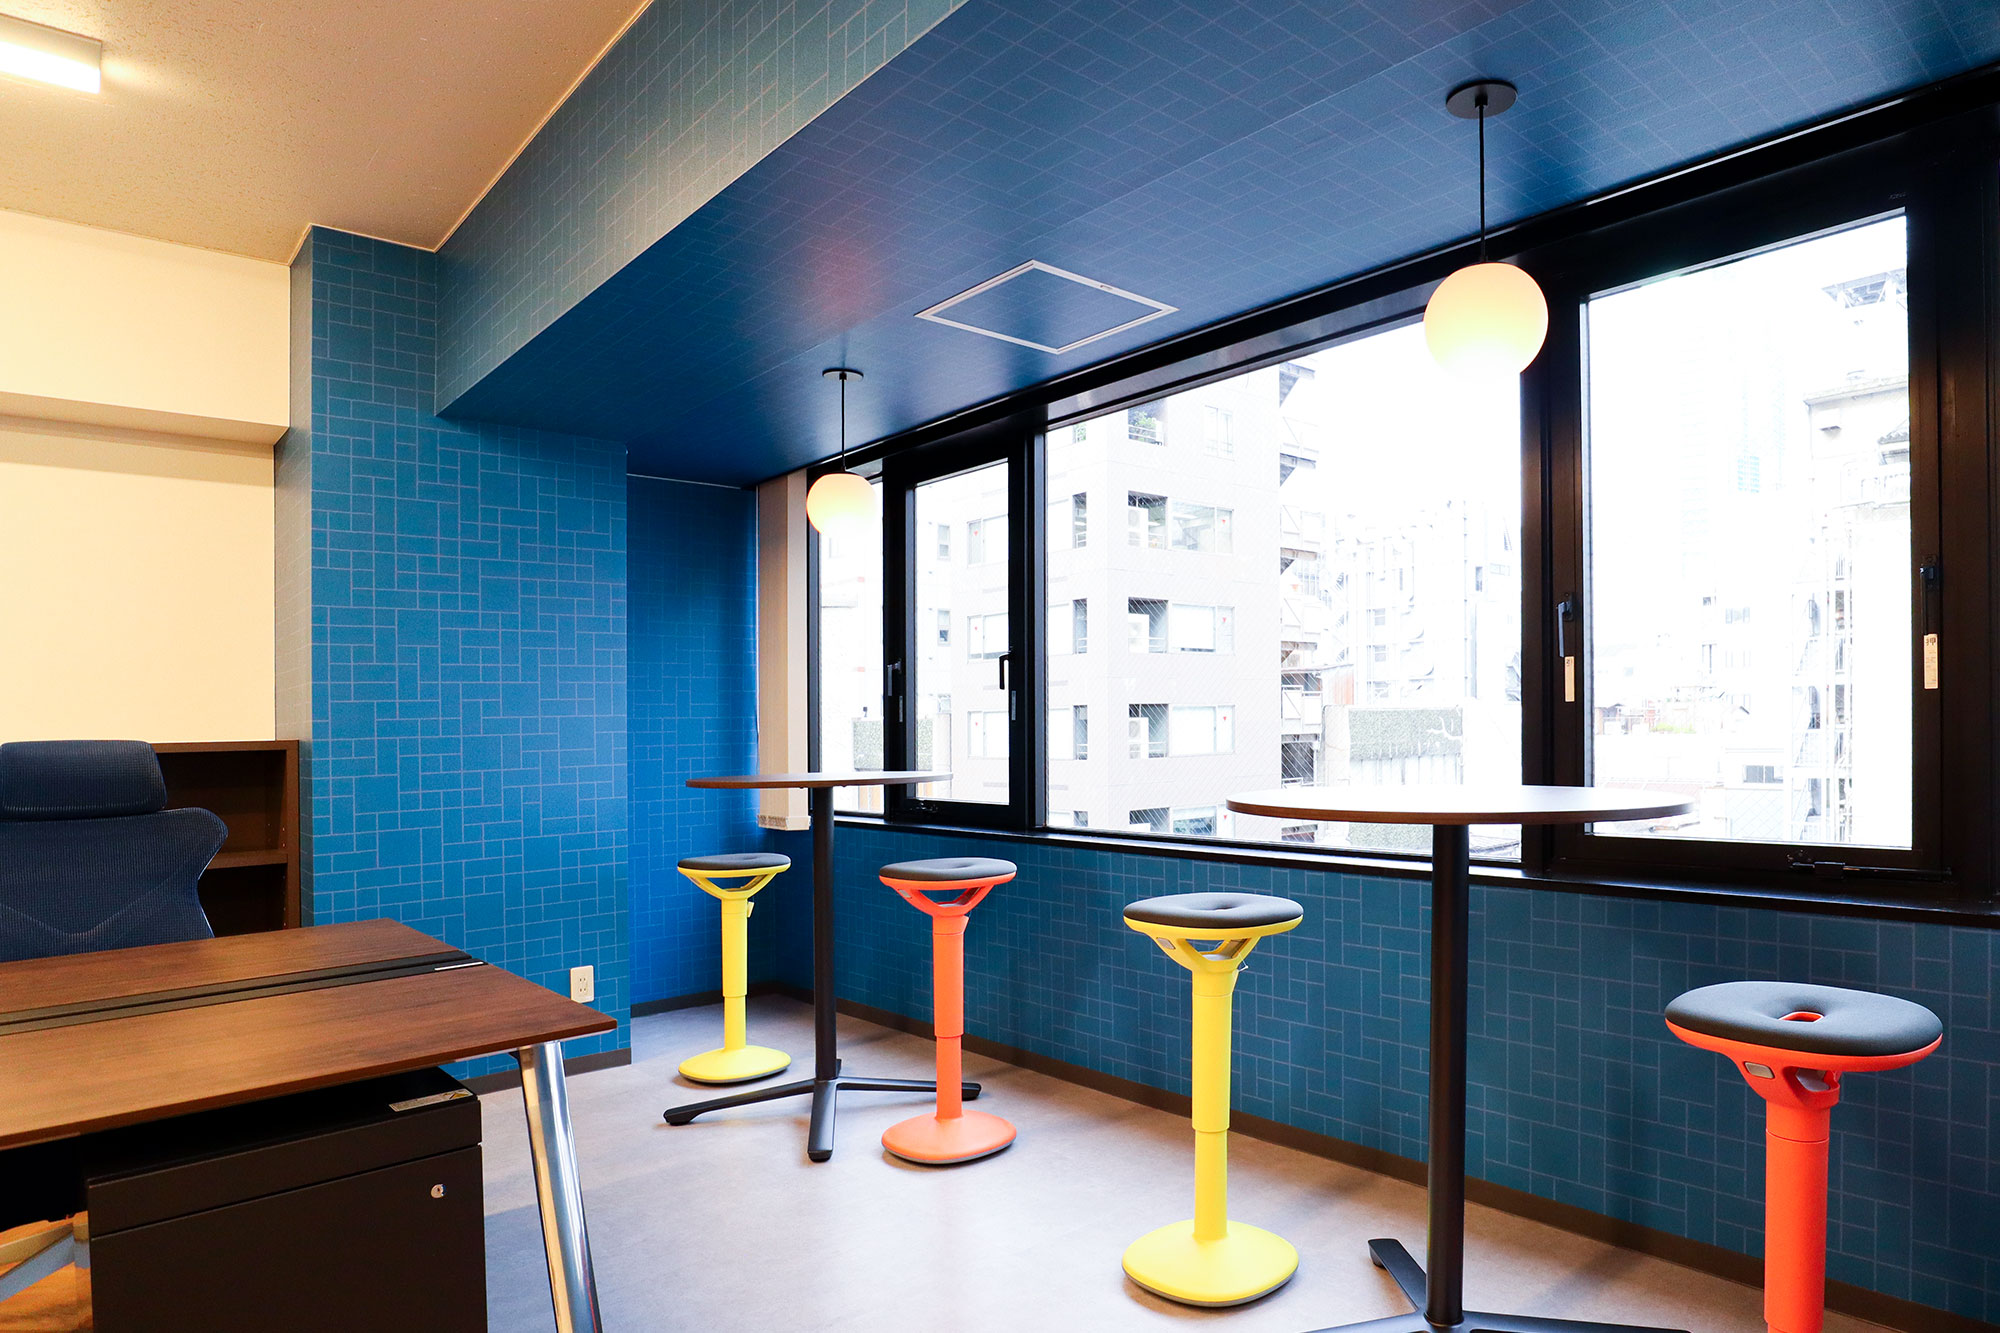 東京都港区のオフィス、窓際の一角の壁面へアクセントとして、ブルーが印象的な幾何学模様「CIRCUIT / P087A」を配した